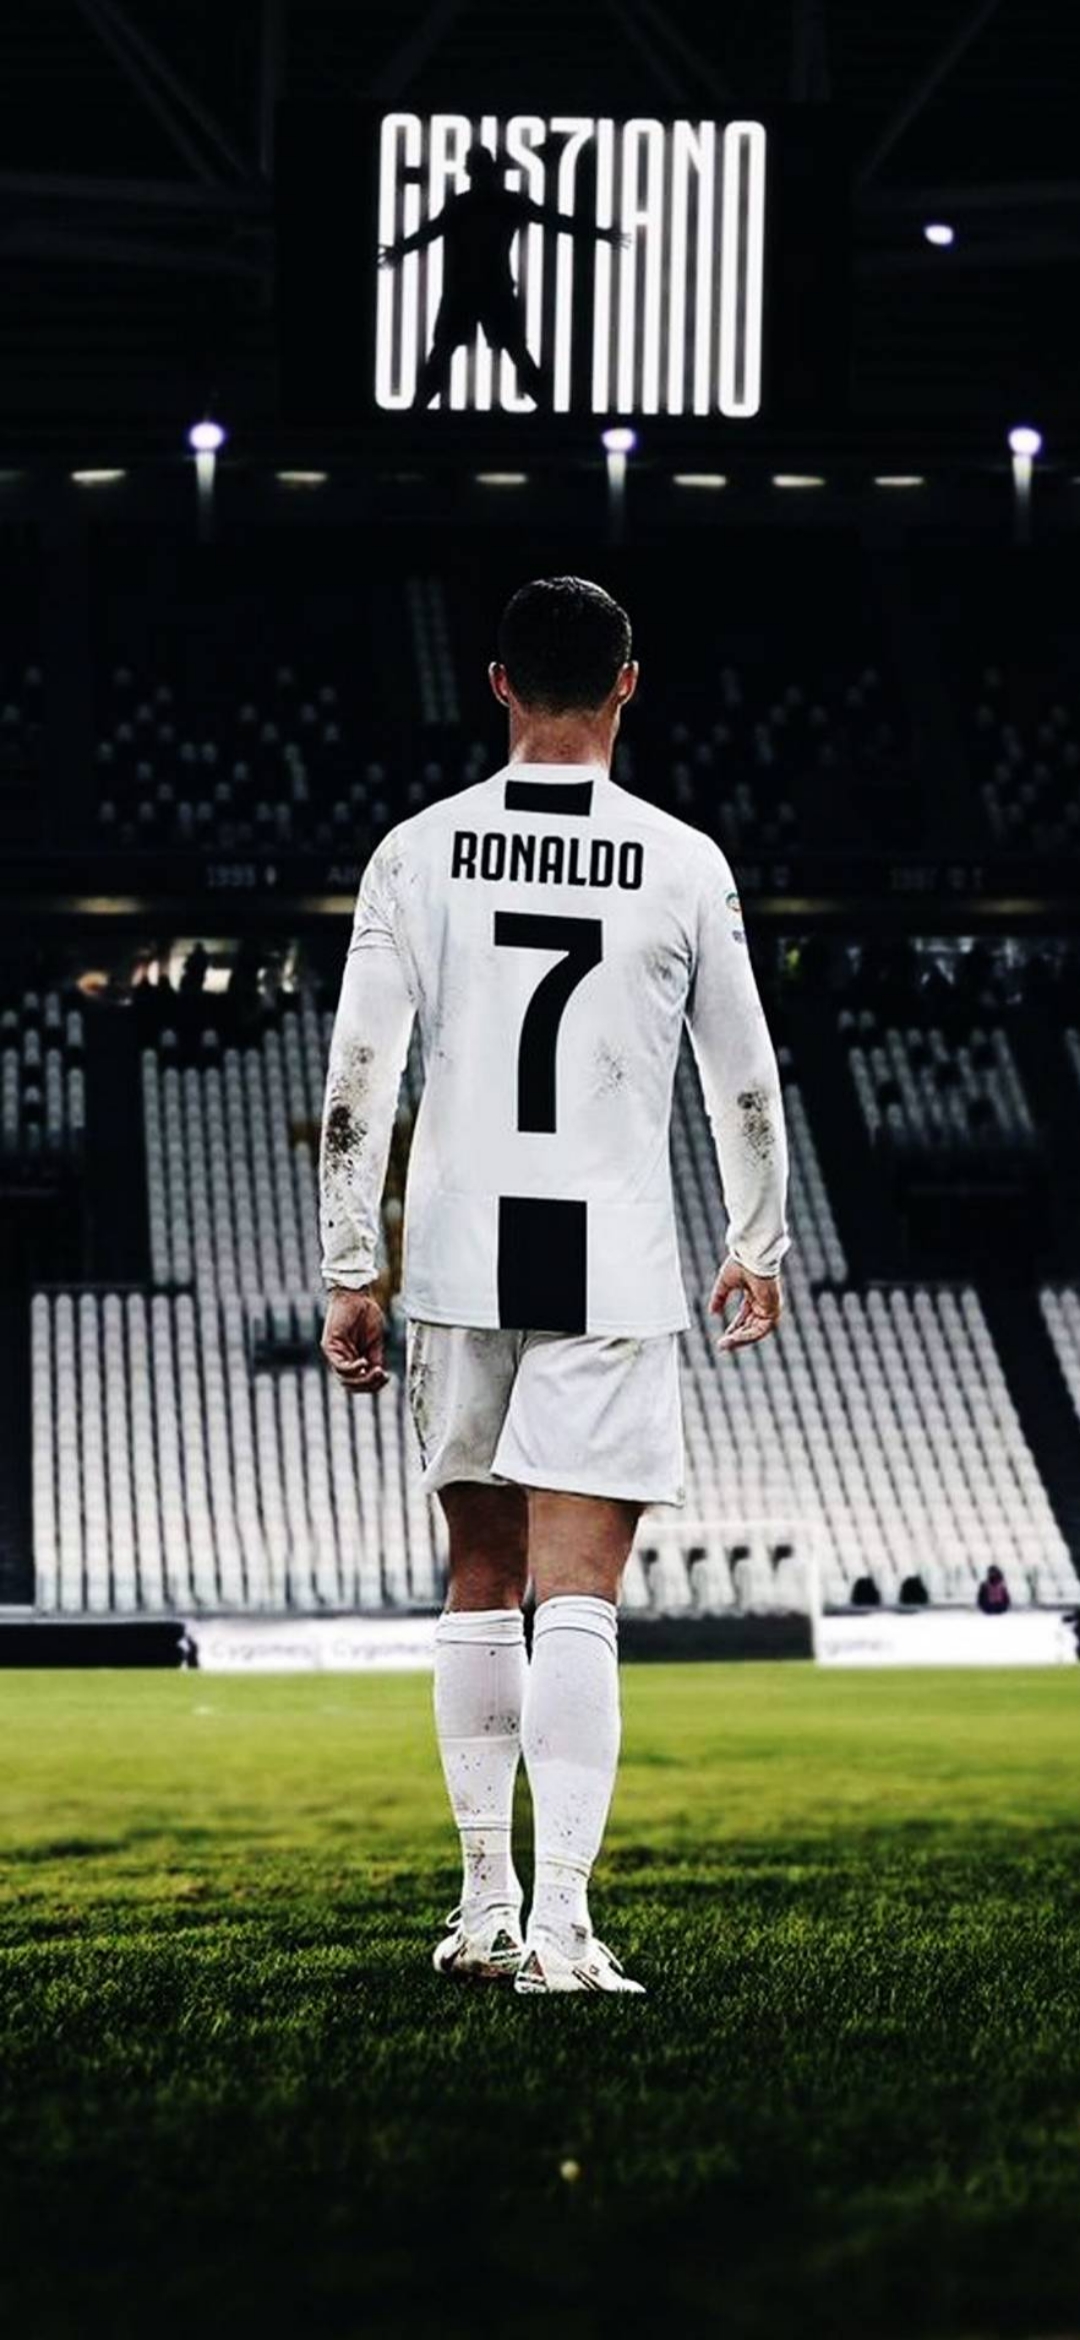 Hình nền Juventus của Ronaldo sẽ đem lại cho bạn những trải nghiệm tuyệt vời nhất về ngôi sao này, anh ta đã vẽ một hình ảnh đẹp của mình trong lòng các fans của đội bóng này. Hãy là một trong số những người được chiêm ngưỡng những bức ảnh tuyệt đẹp của anh ta.